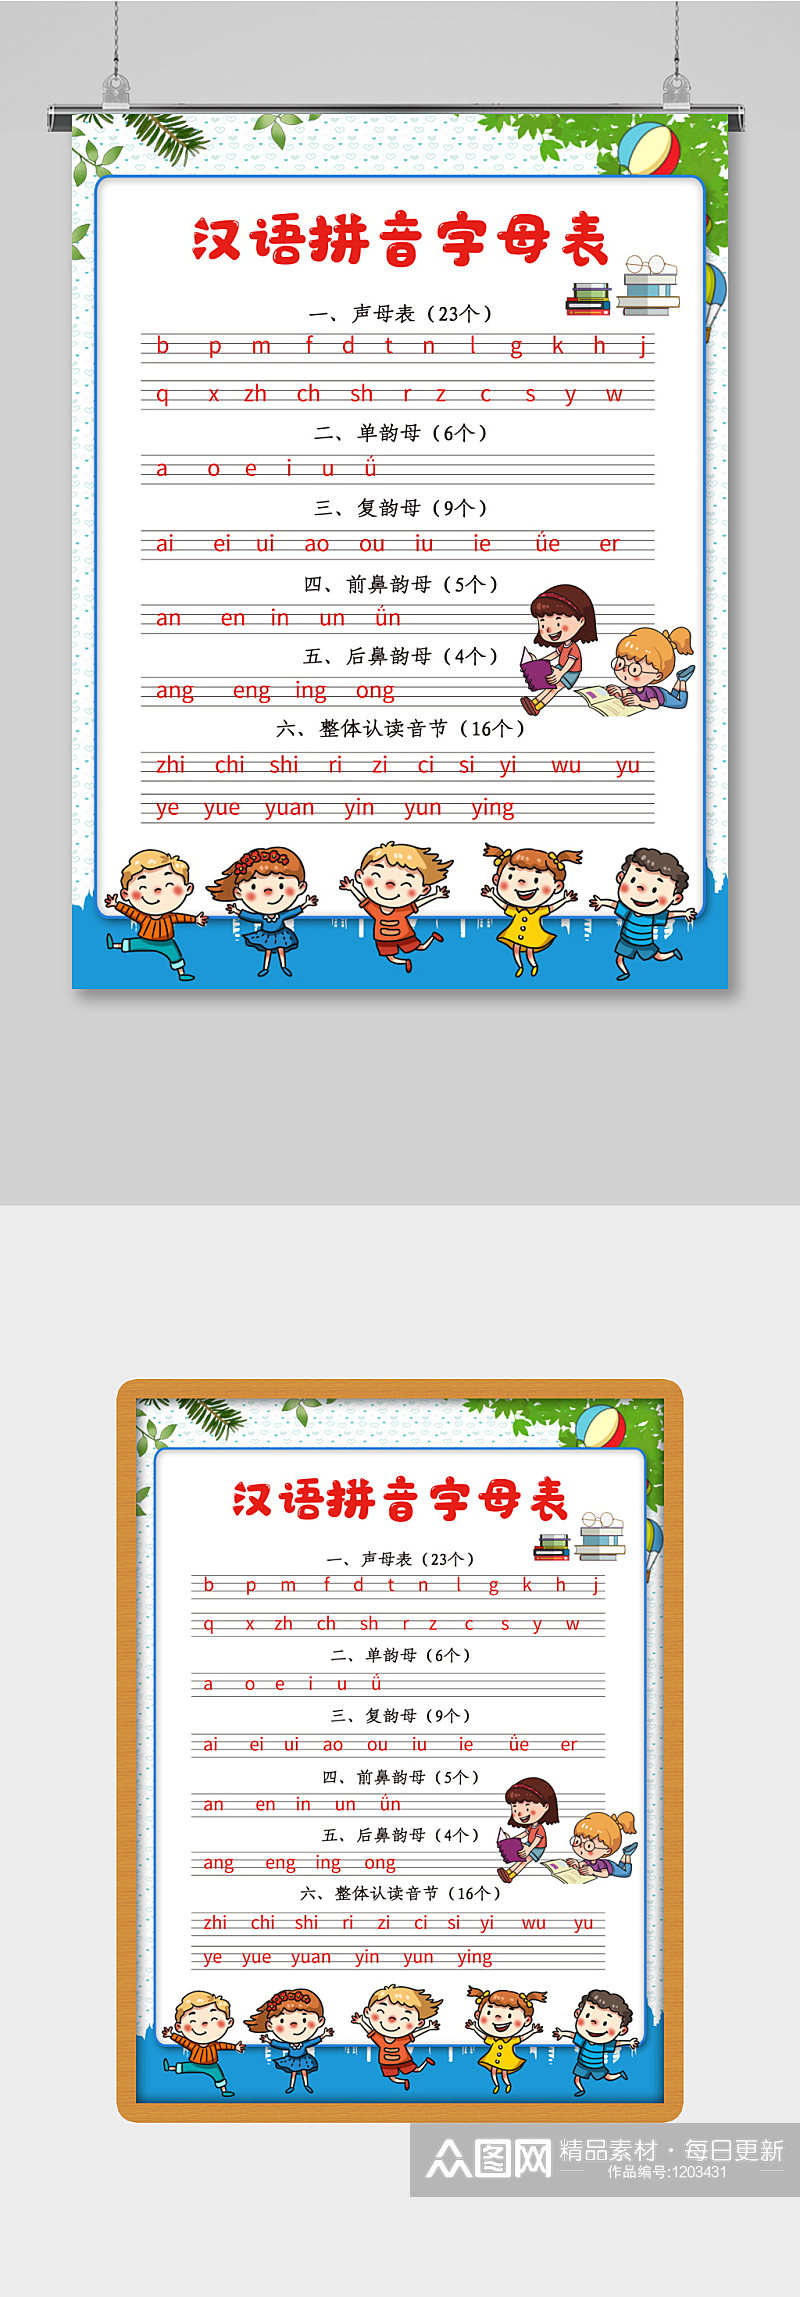 卡通人偶汉语拼音字母表海报素材